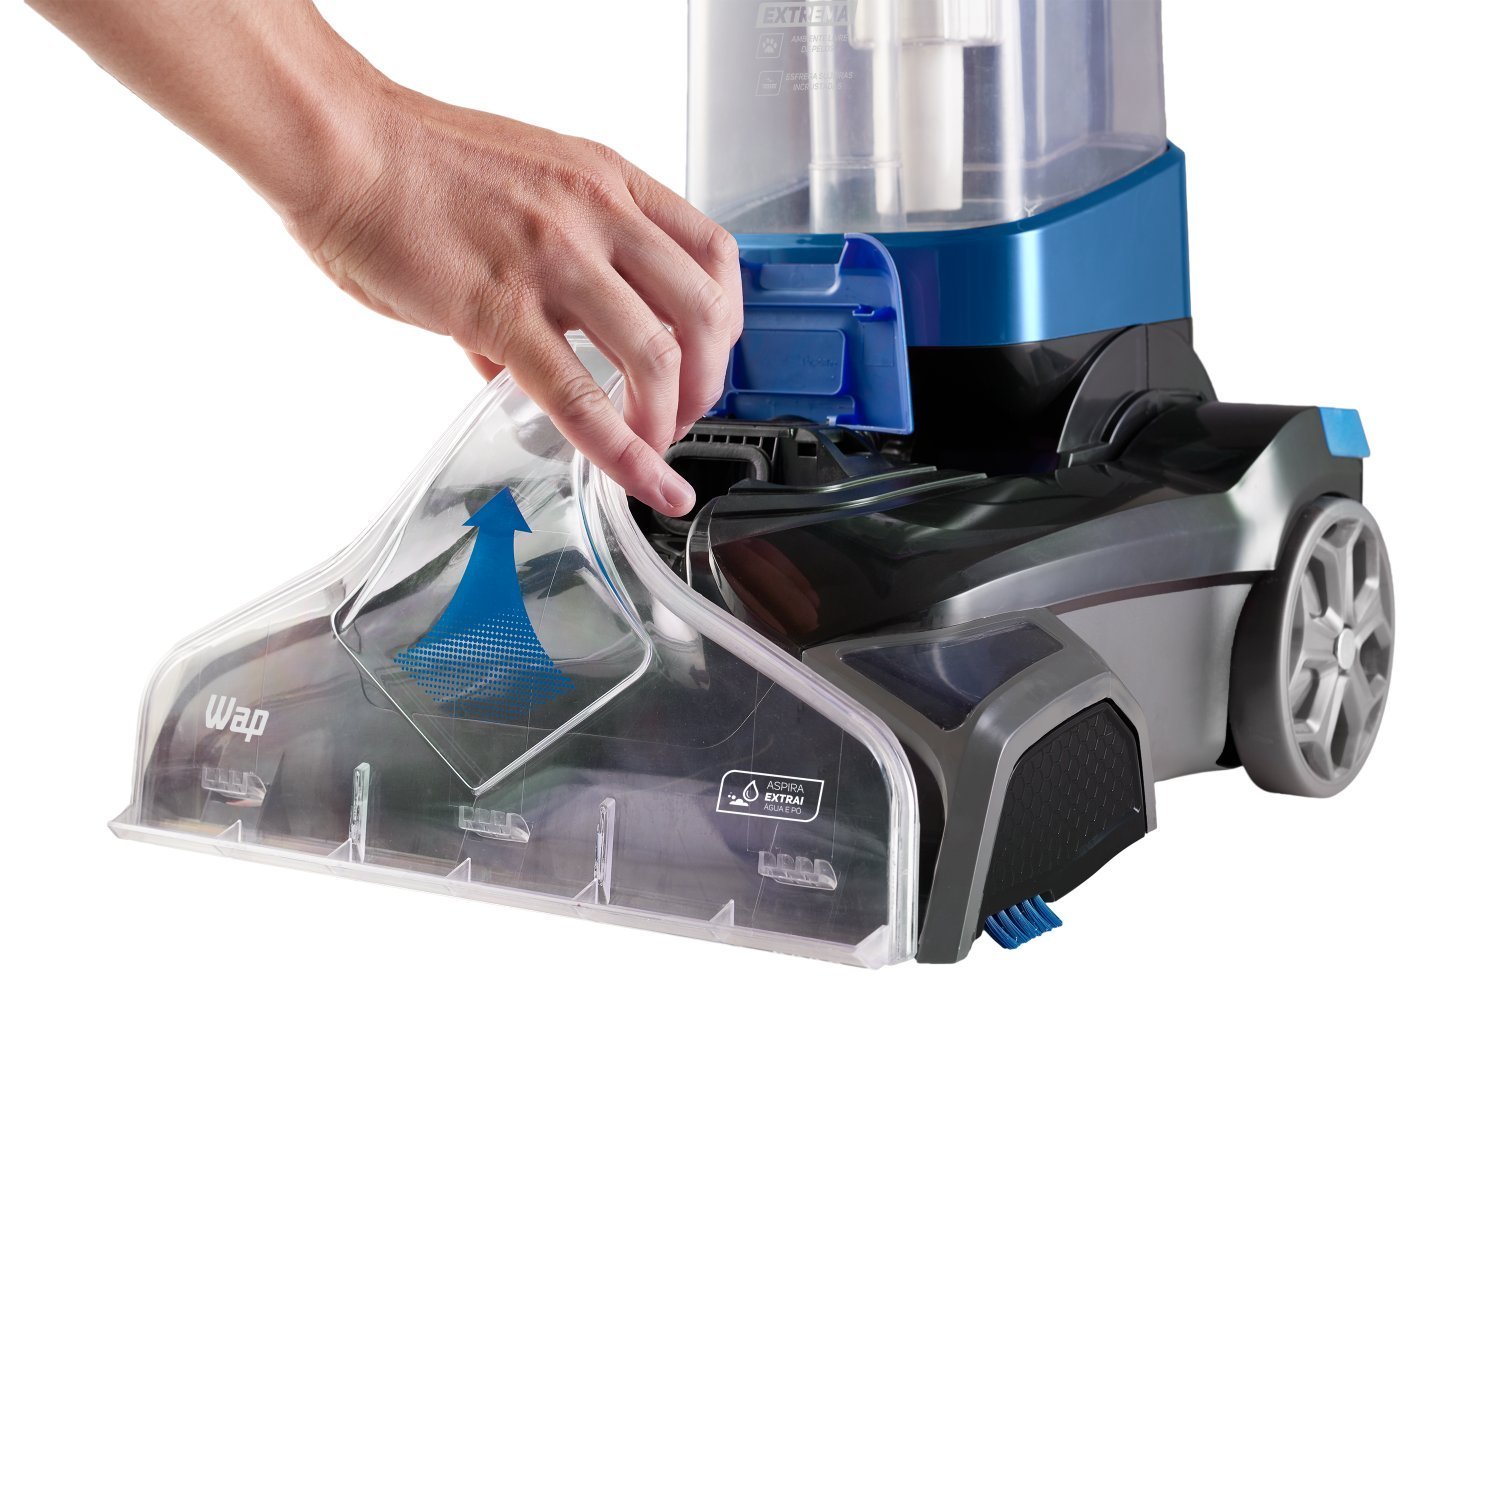 Extratora e Higienizadora Vertical WAP Power Cleaner PRO Sofás Tapetes e Carpetes 220V Azul - 19